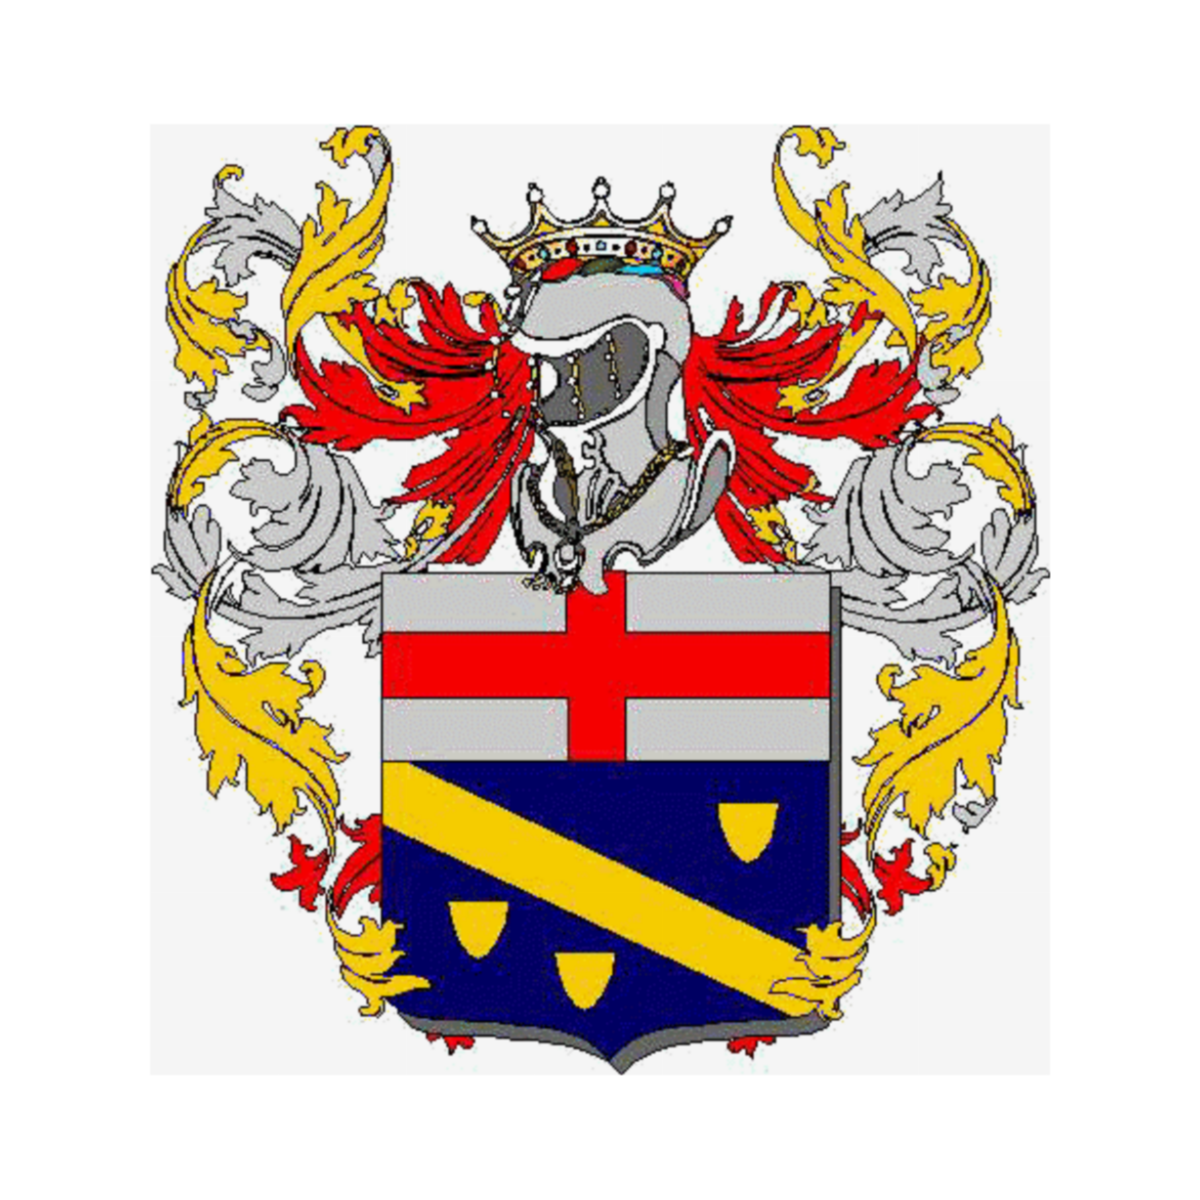 Coat of arms of familyBrami, Cini,Cintii,Cintij,Cintij del rione Trastevere